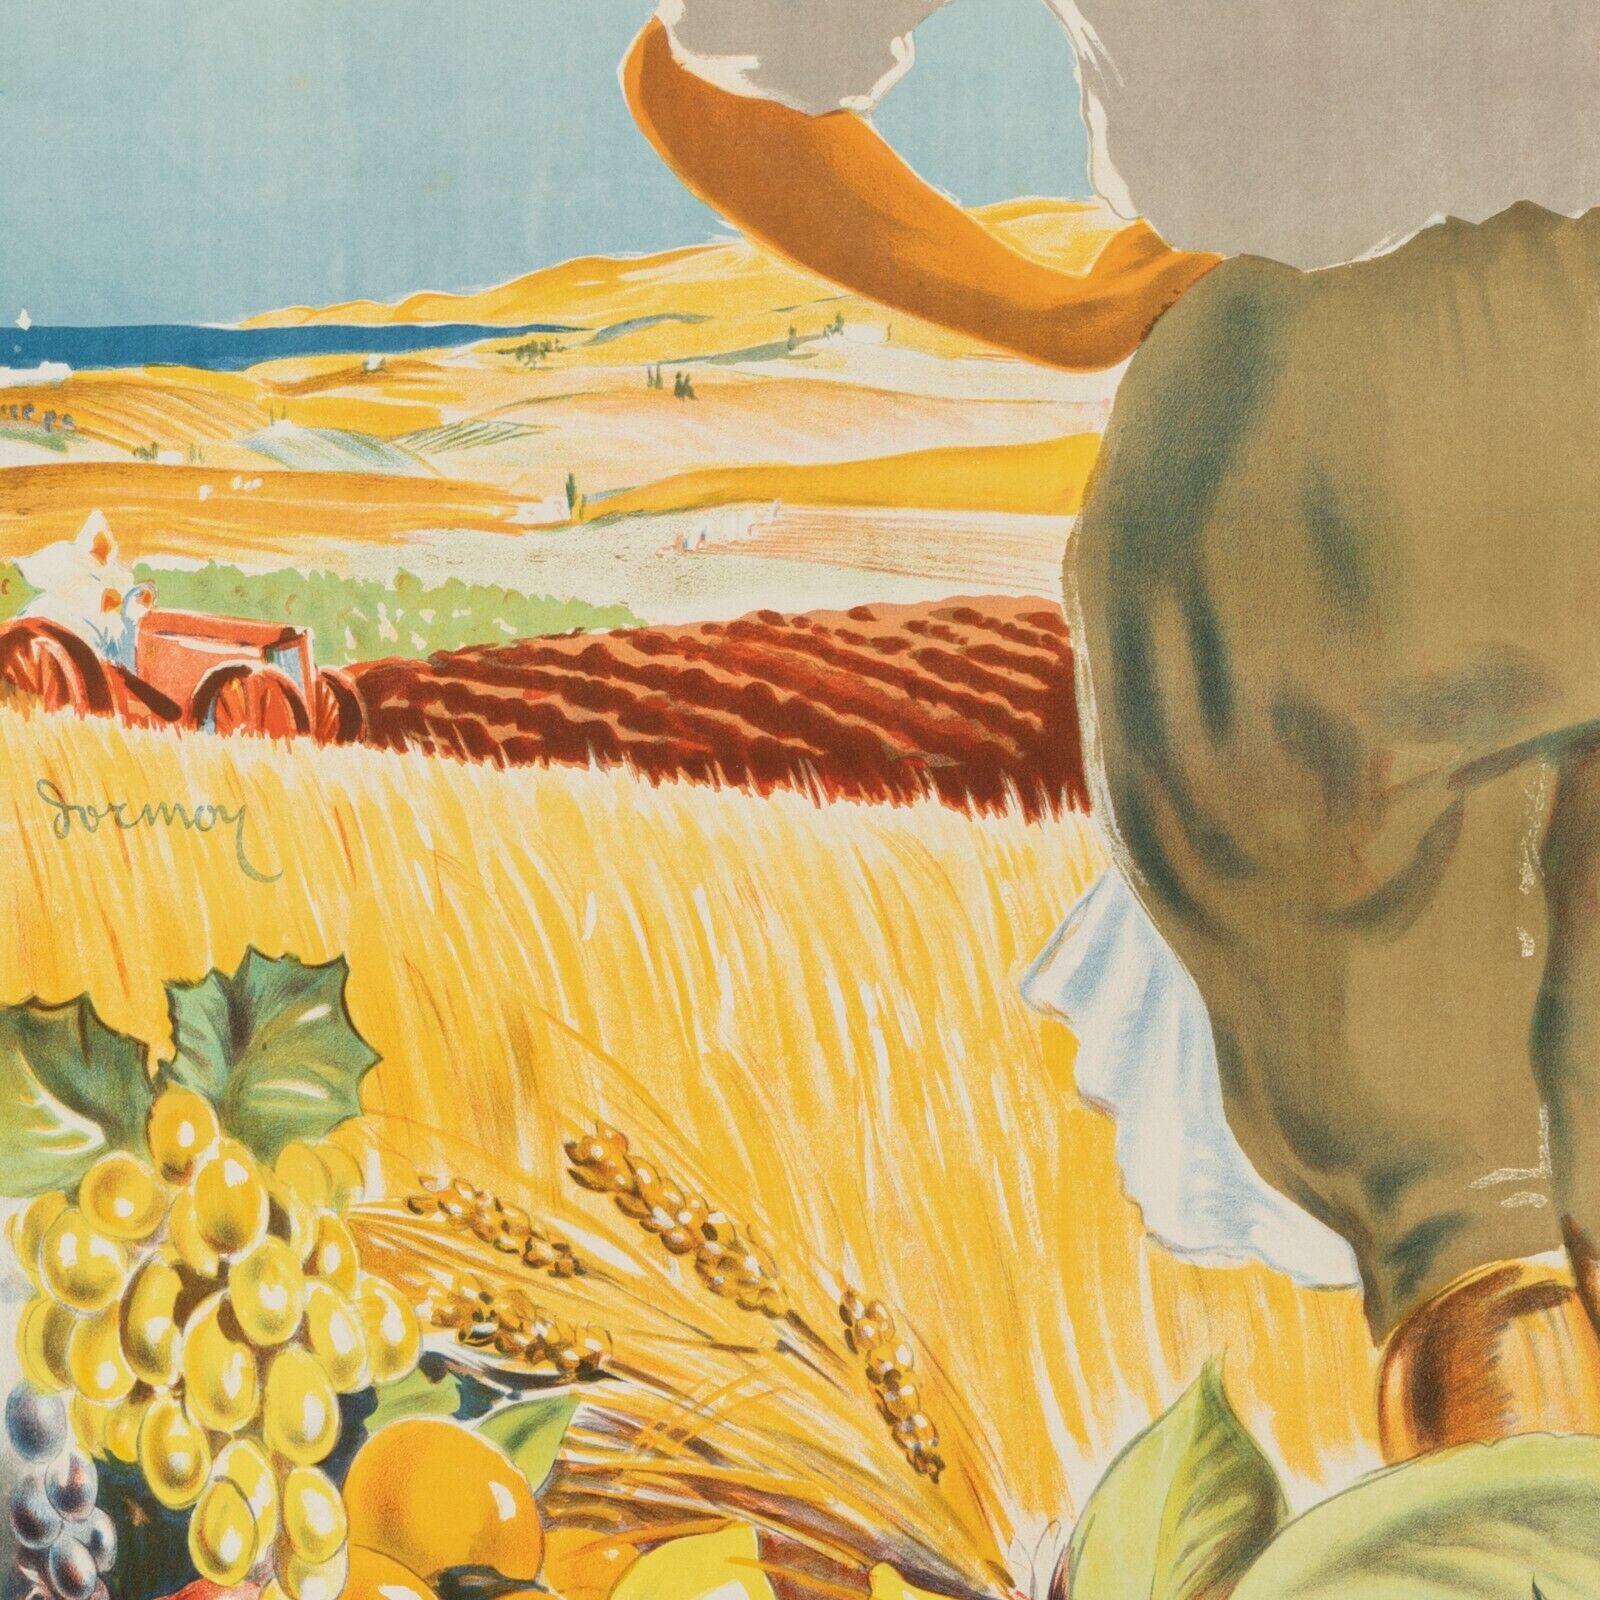 Art Deco Original Colonial Poster-Dormoy-Algeria 1830 1930-Farmland, 1930 For Sale